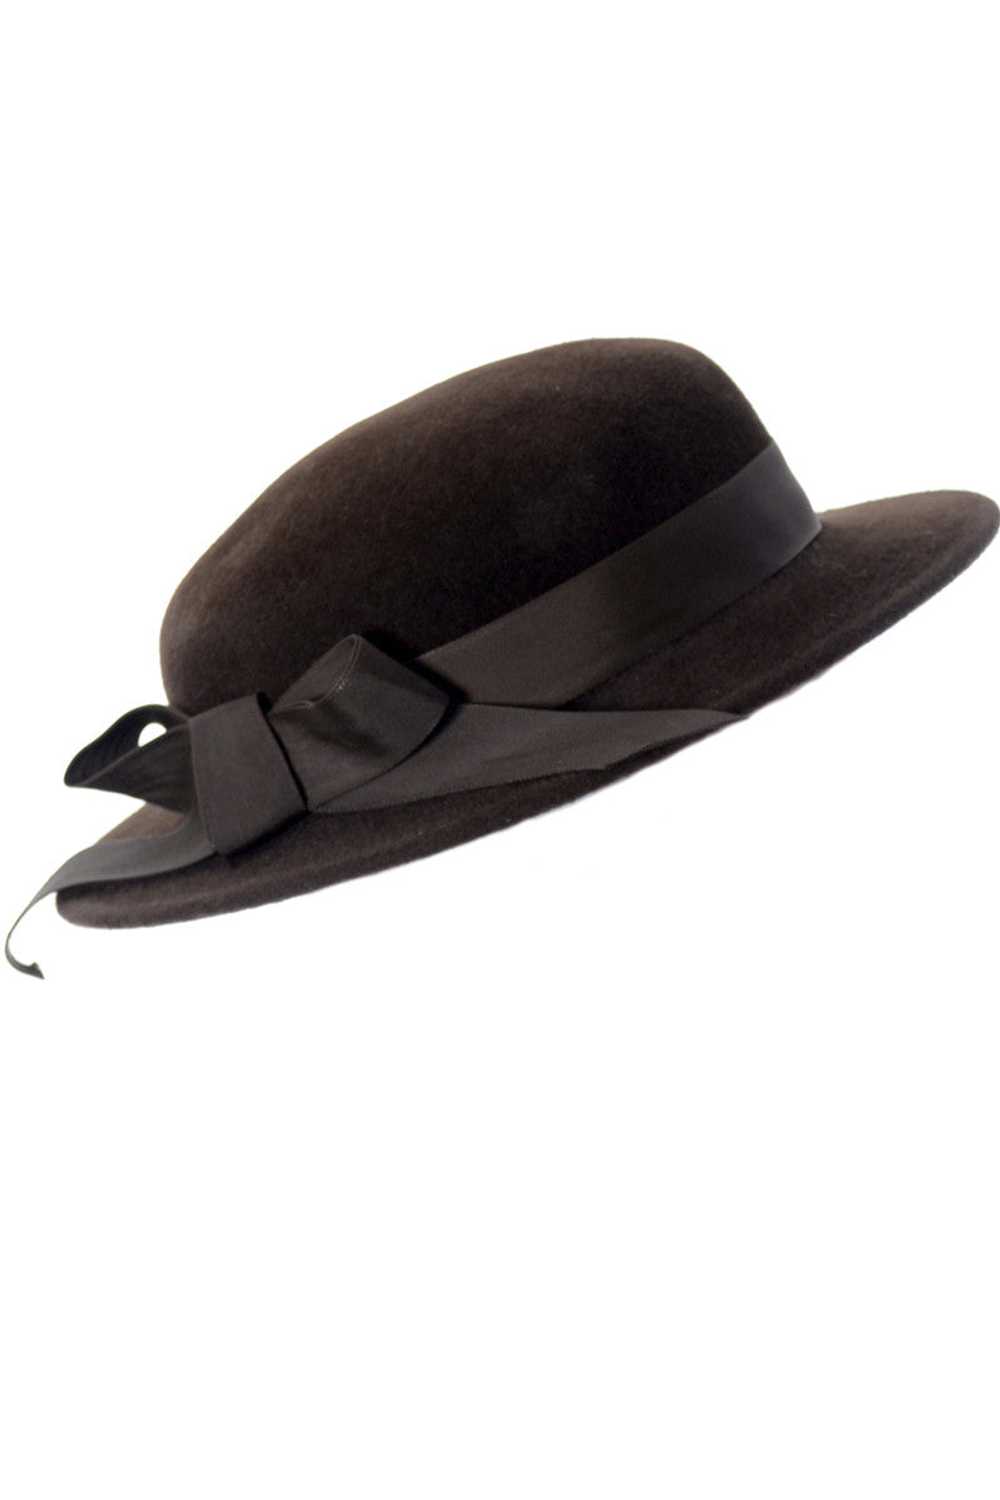 Frank Olive I Magnin Vintage Brown Wool Felt Hat - image 1